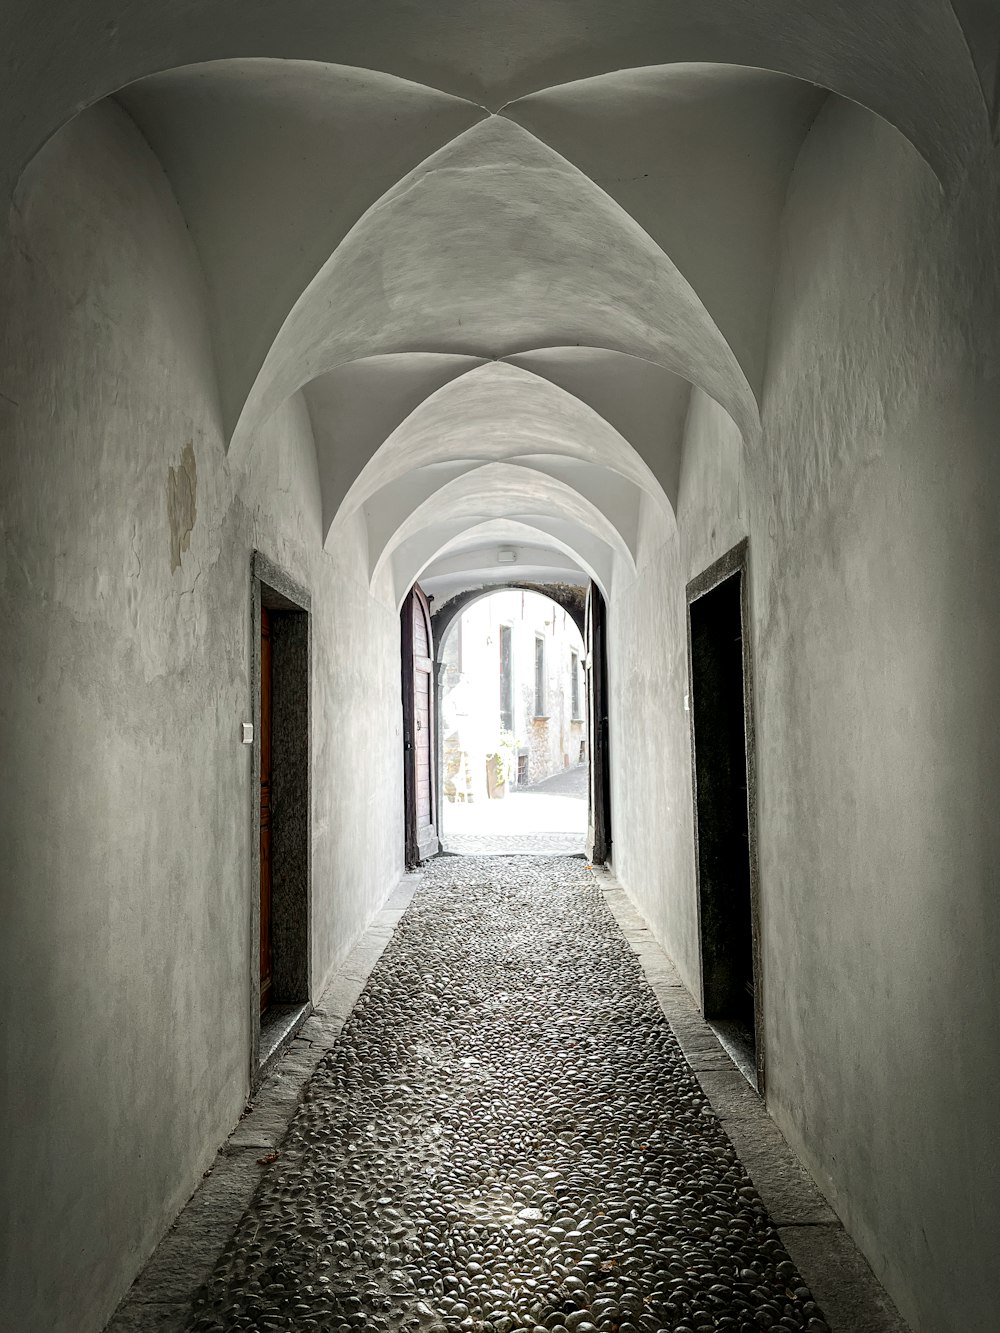 a long narrow hallway with a stone floor